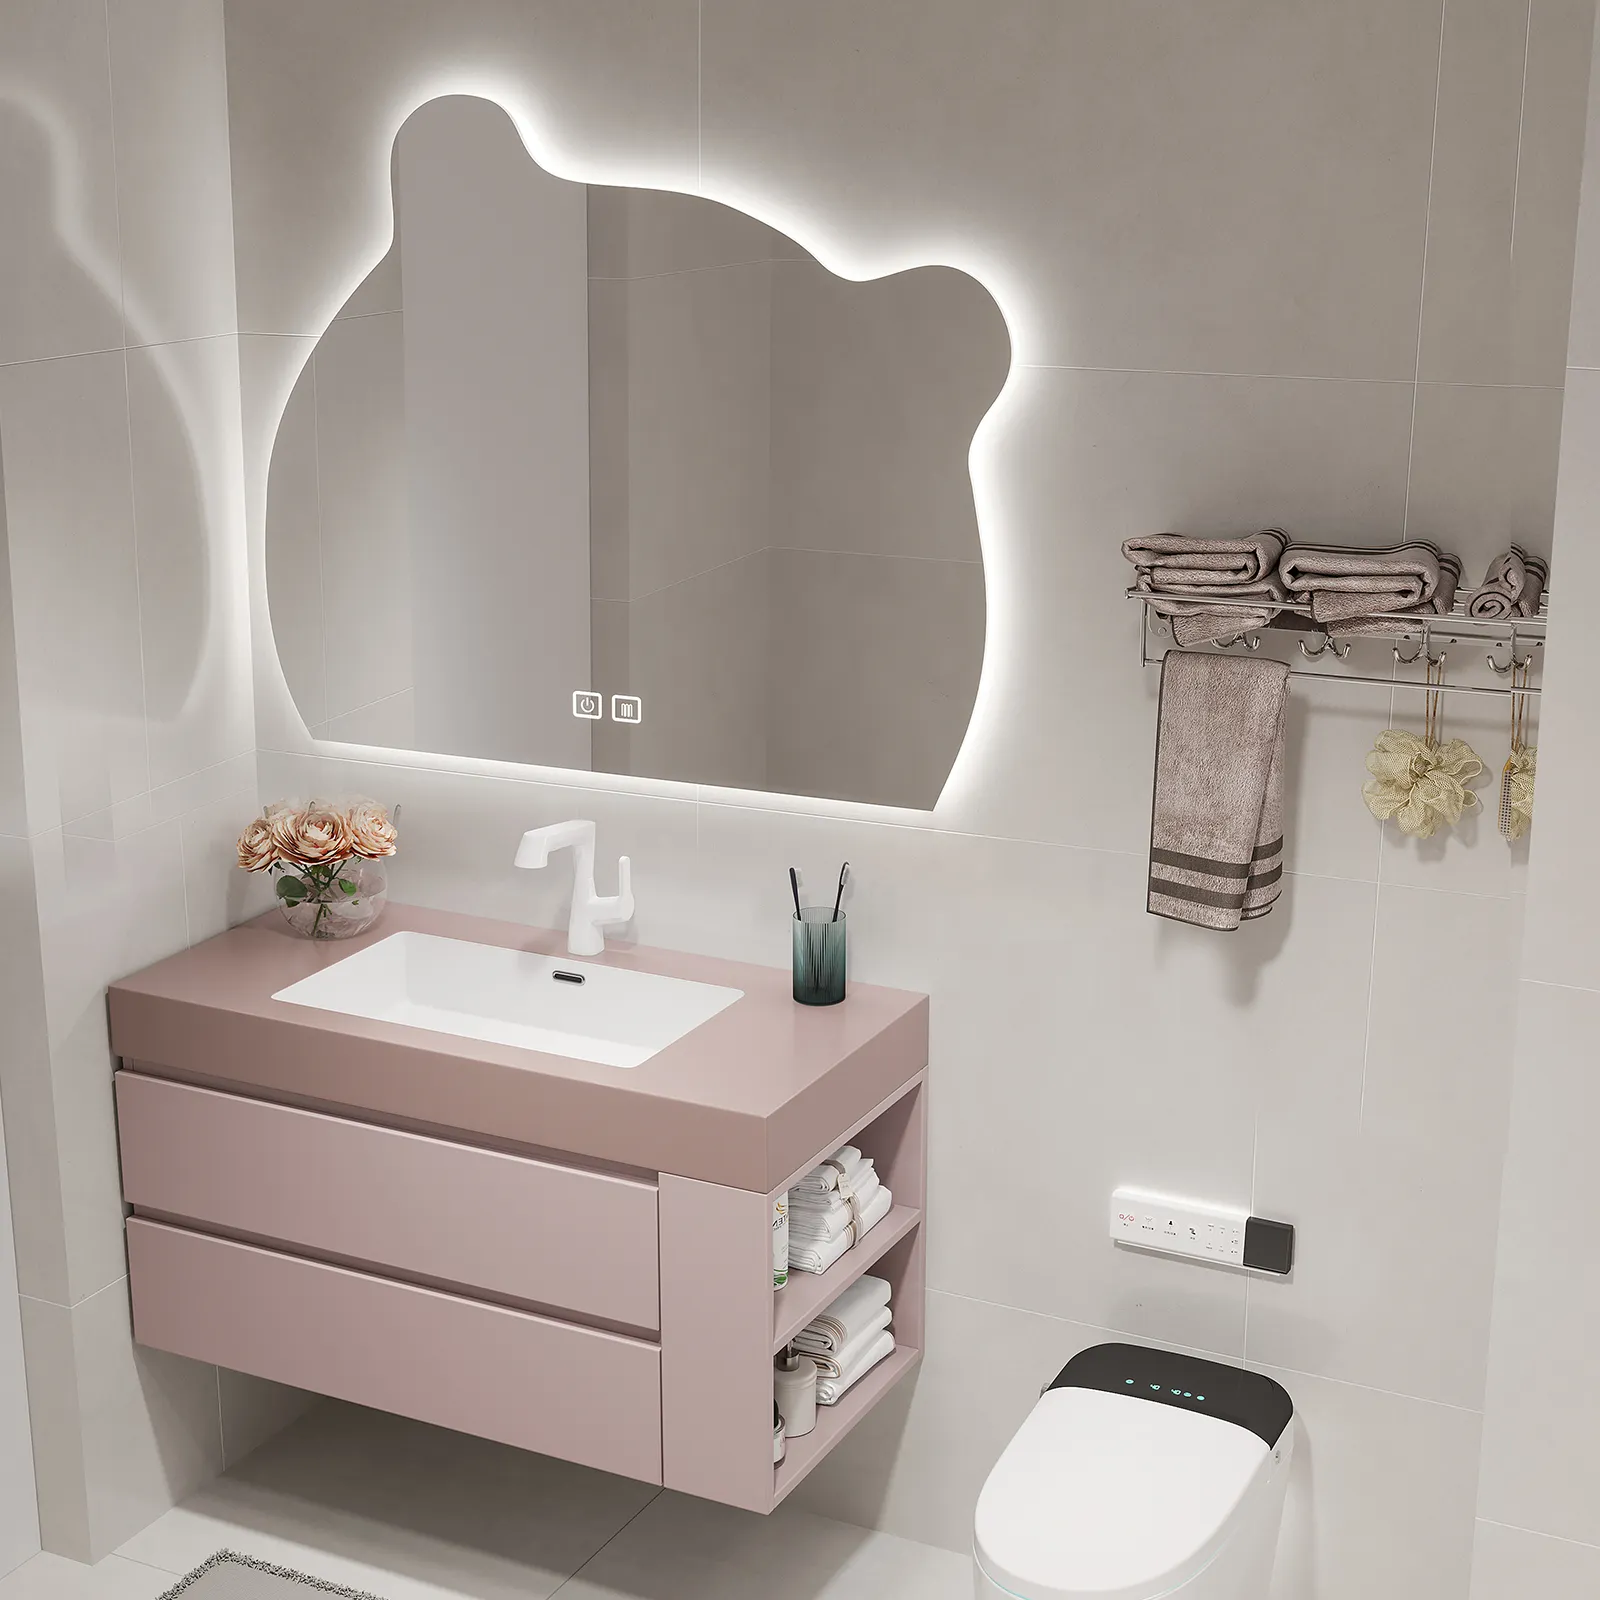 Piatto di roccia senza cuciture lavabo integrato mobiletto del bagno mobiletto del lavabo in legno massello moderno rosa